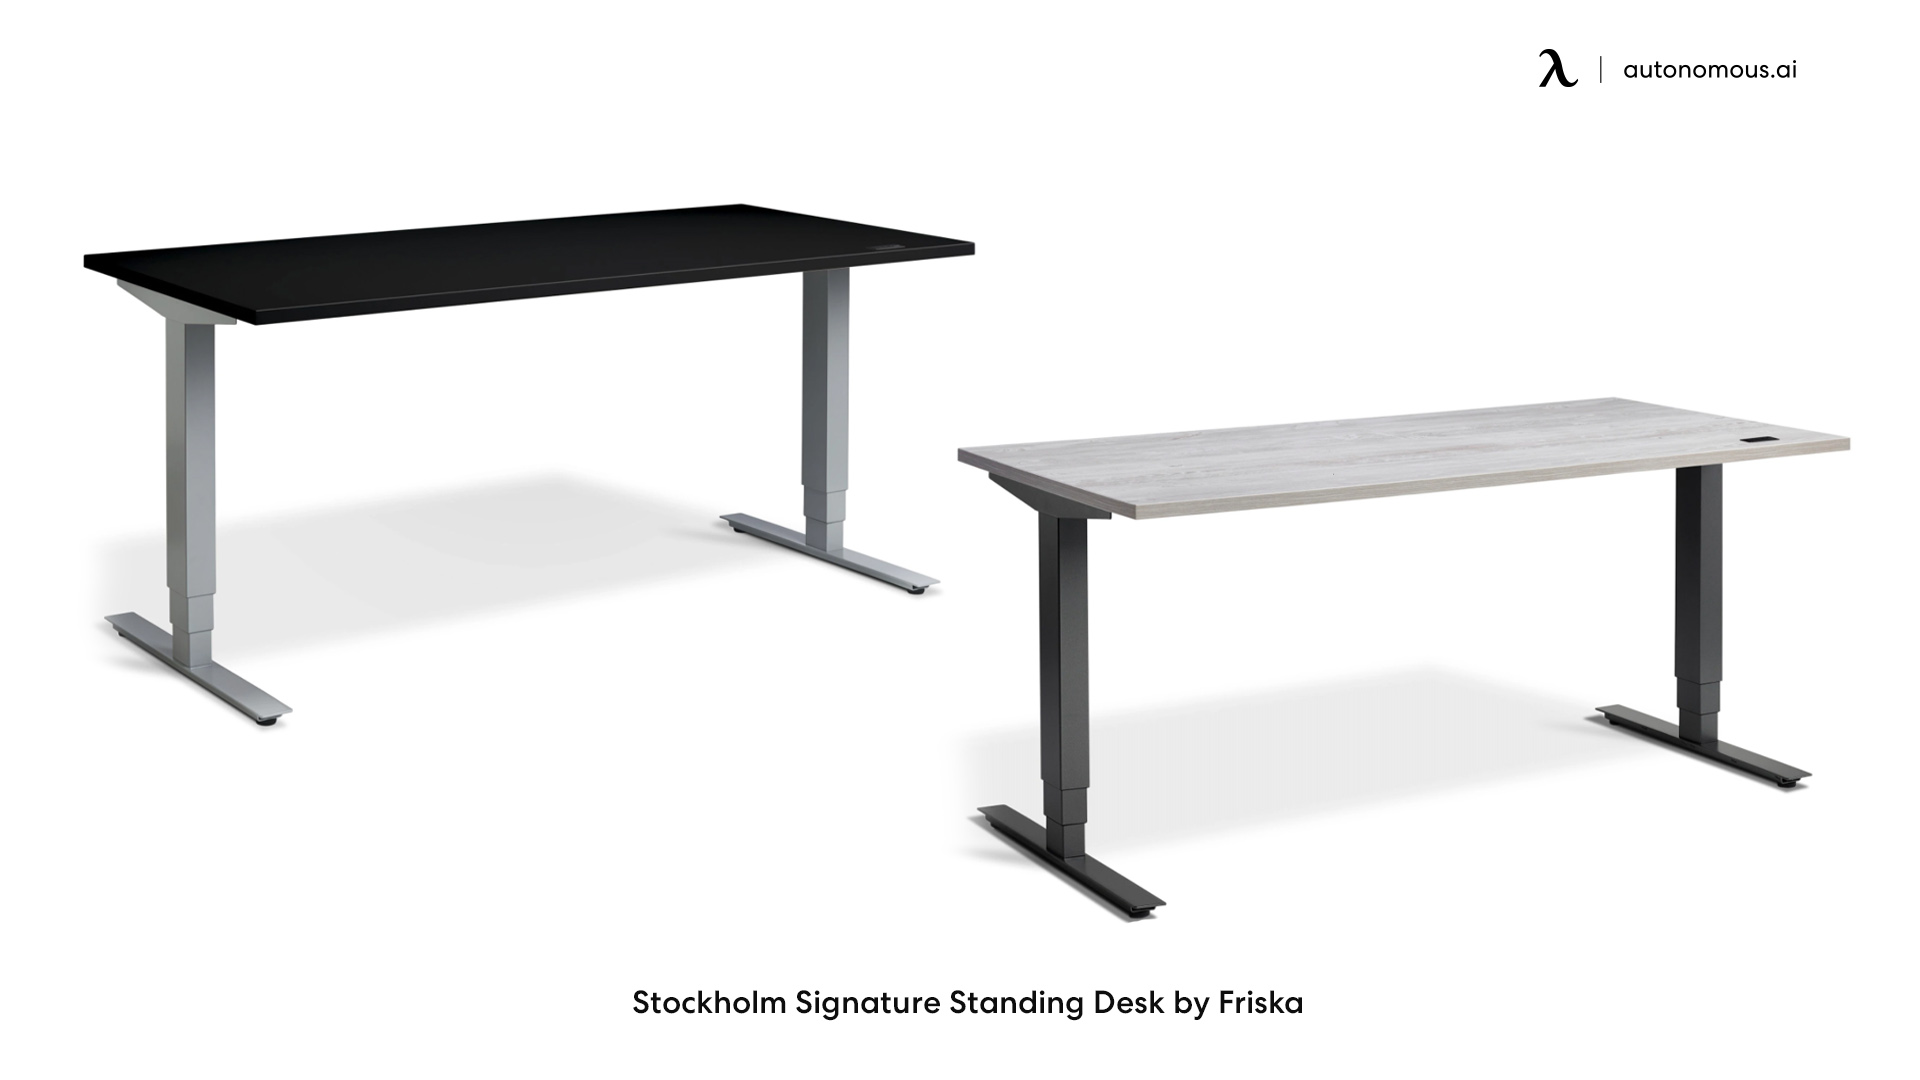 Stockholm Signature Standing Desk by Friska